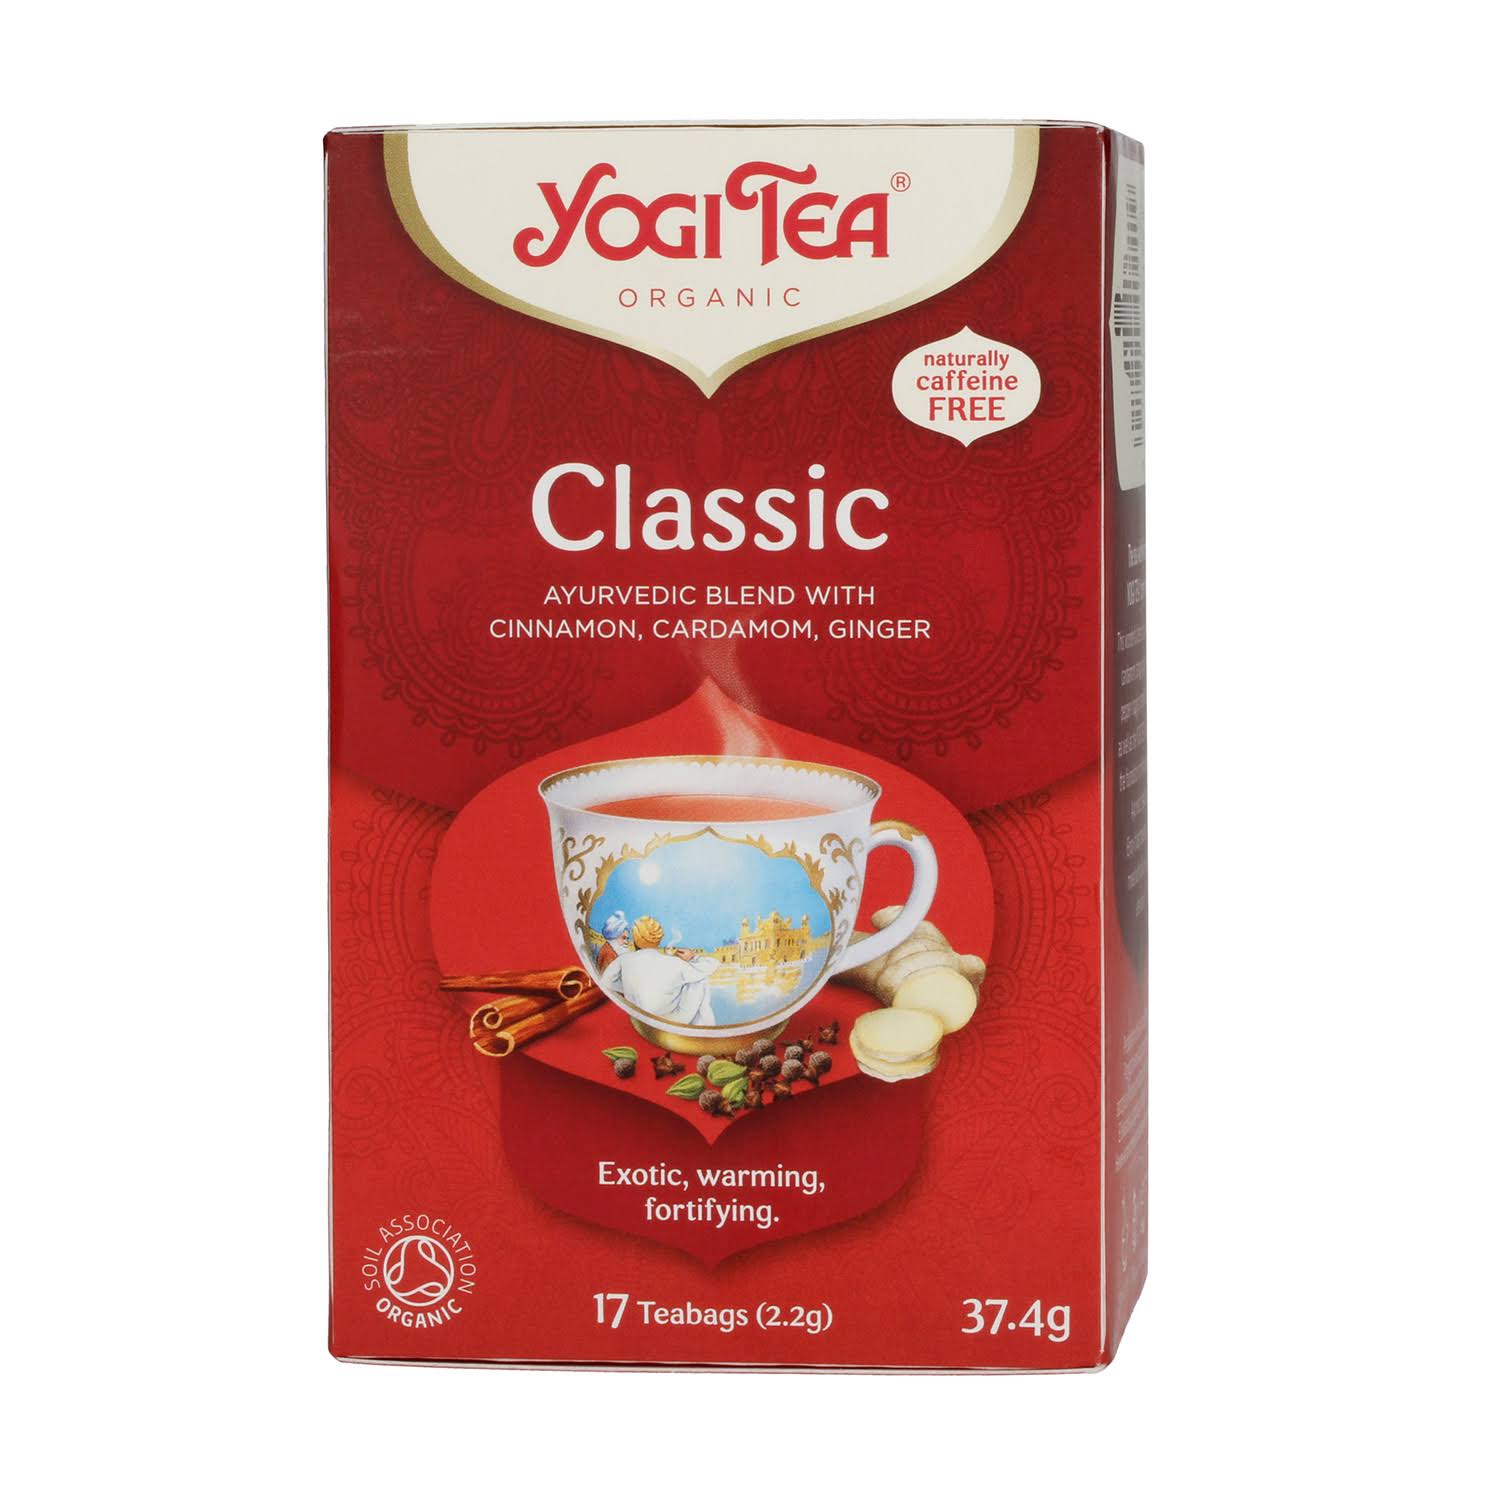 Yogi Tea Organic Classic Tea - 17 Teabags, 37.4g